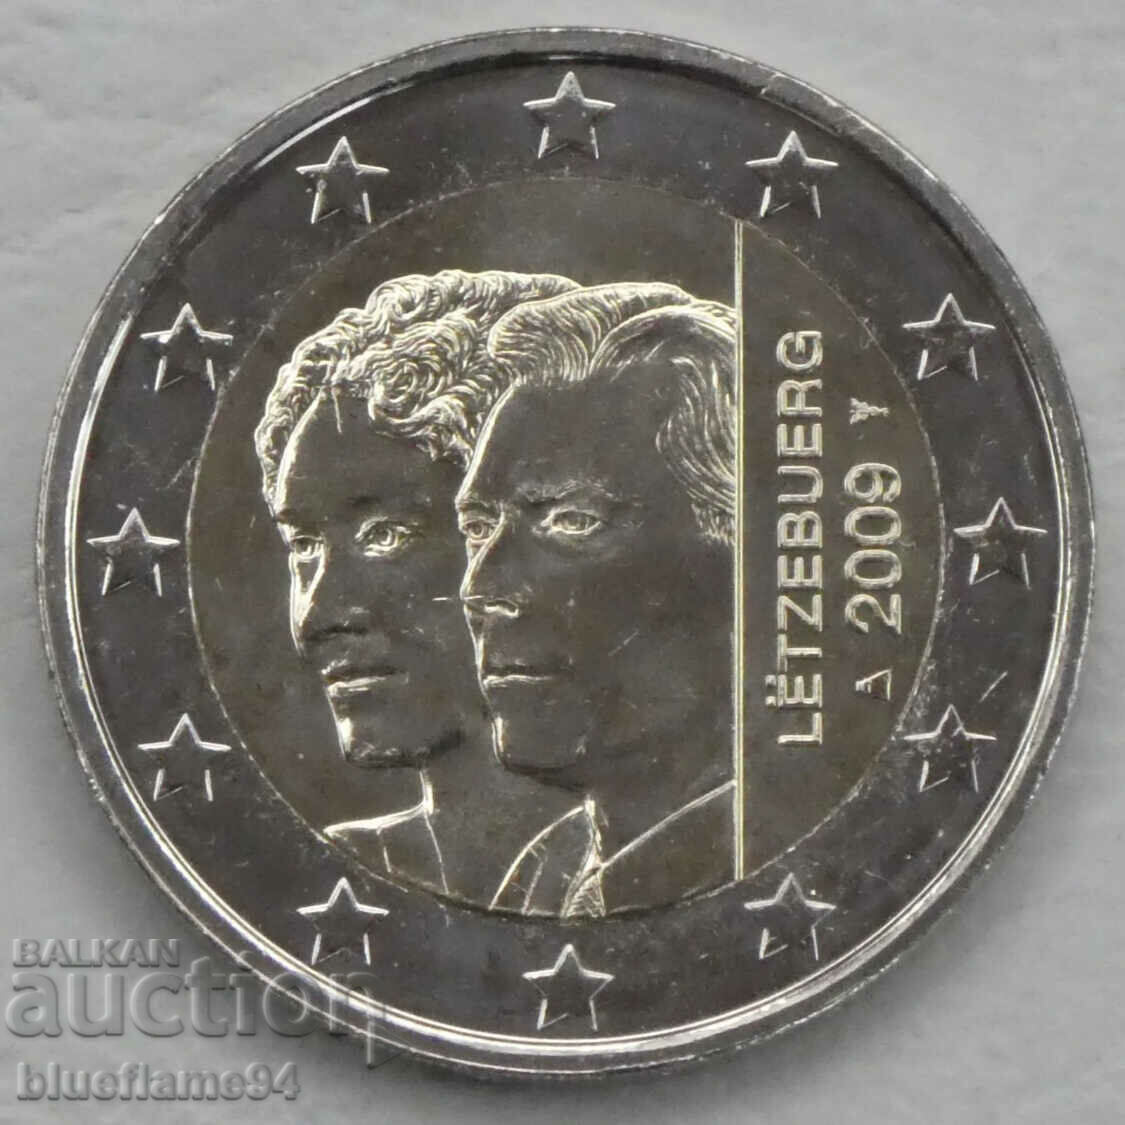 2 euro Luxemburg 2009